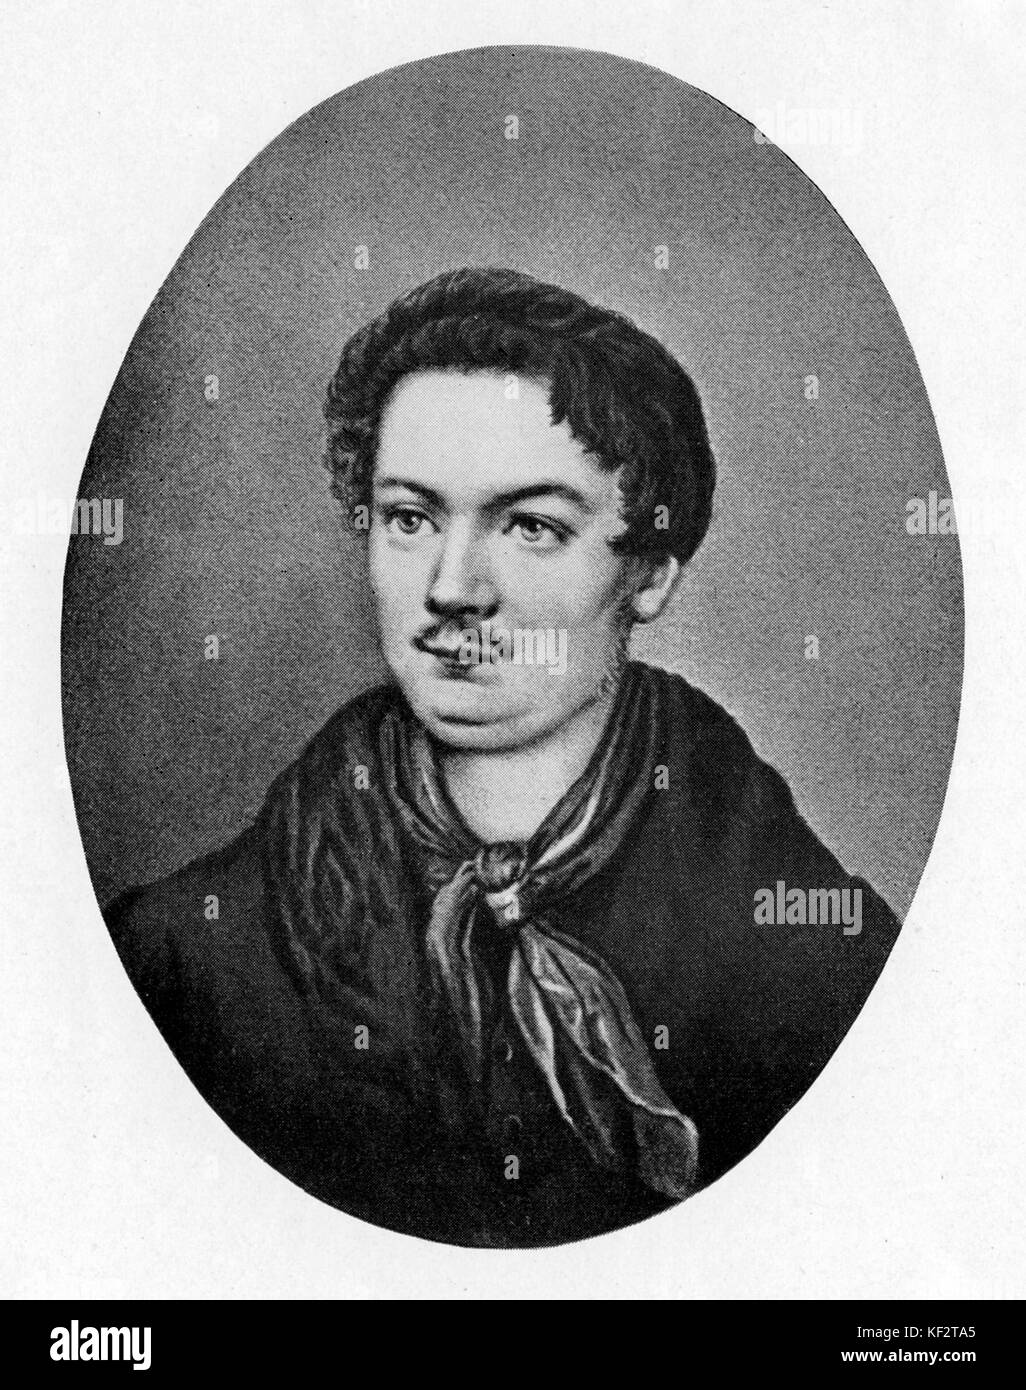 Robert A. Schumann - Porträt, im Alter von 21 Jahren. Deutsche Komponist, Ehemann von Clara Schumann (geb. Wieck), 8. Juni 1810 - vom 29. Juli 1856. Stockfoto